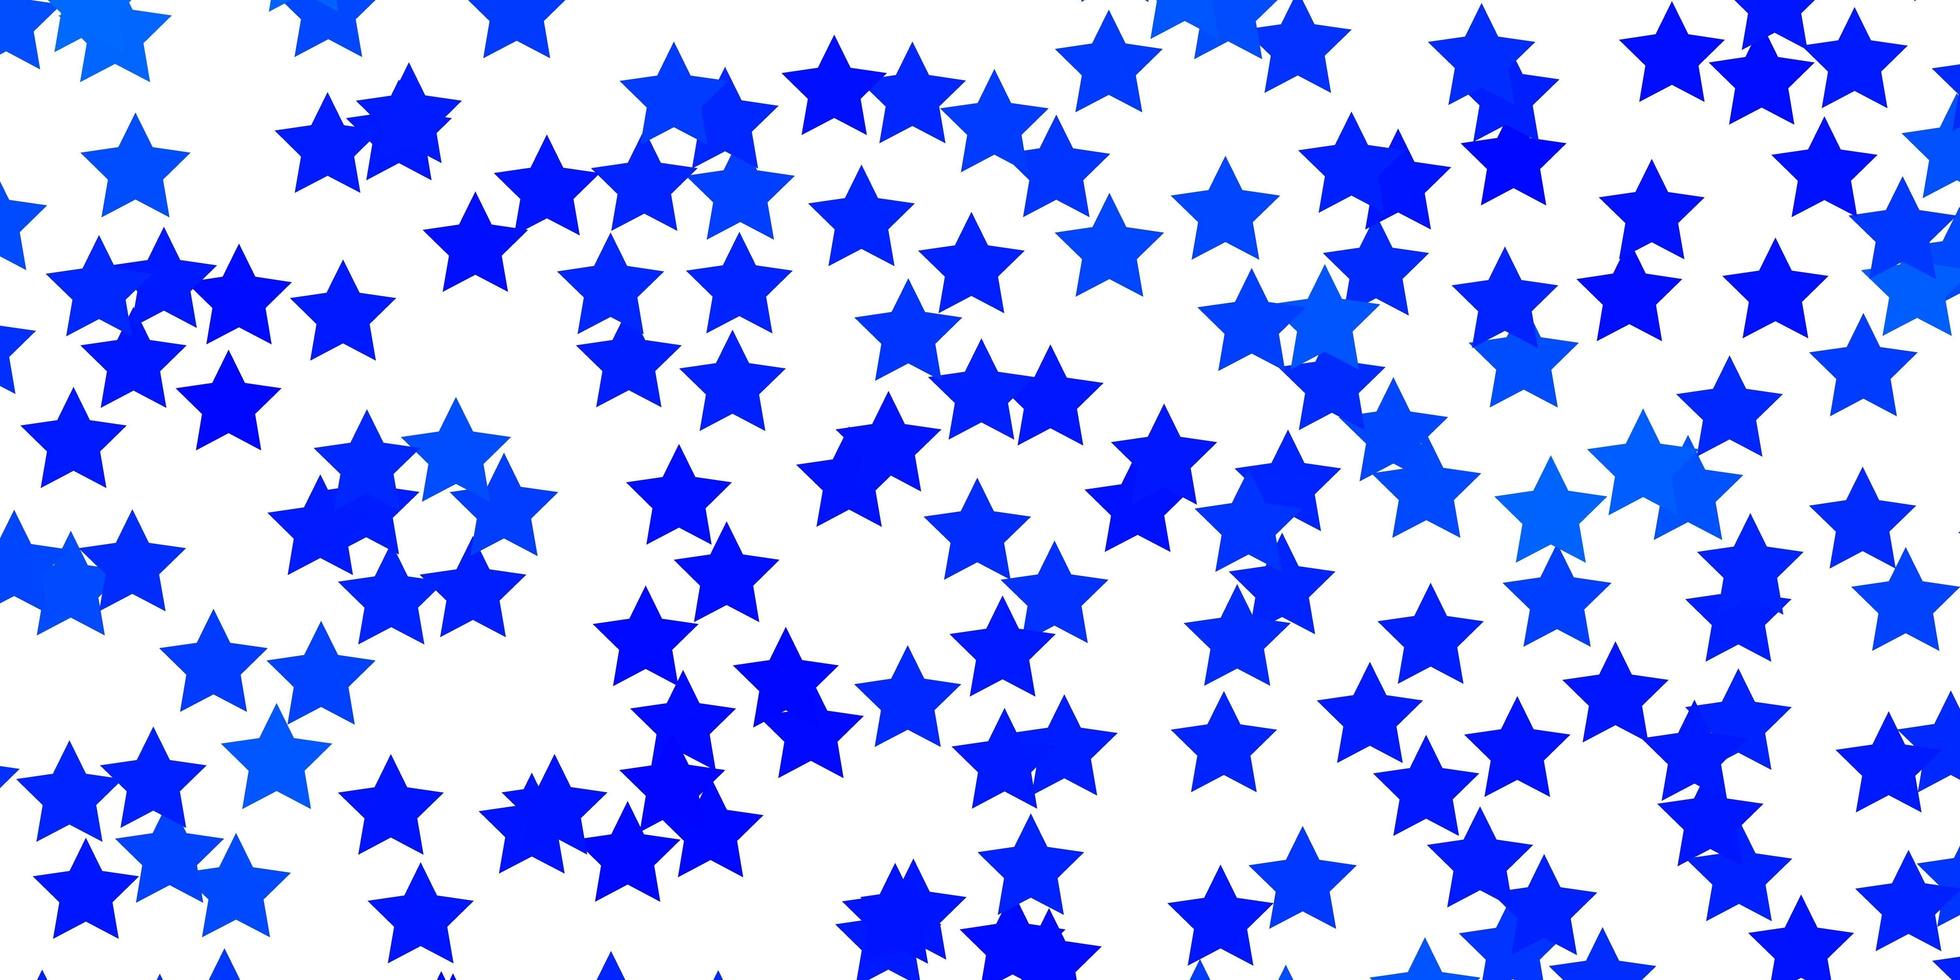 layout vettoriale azzurro con stelle luminose.